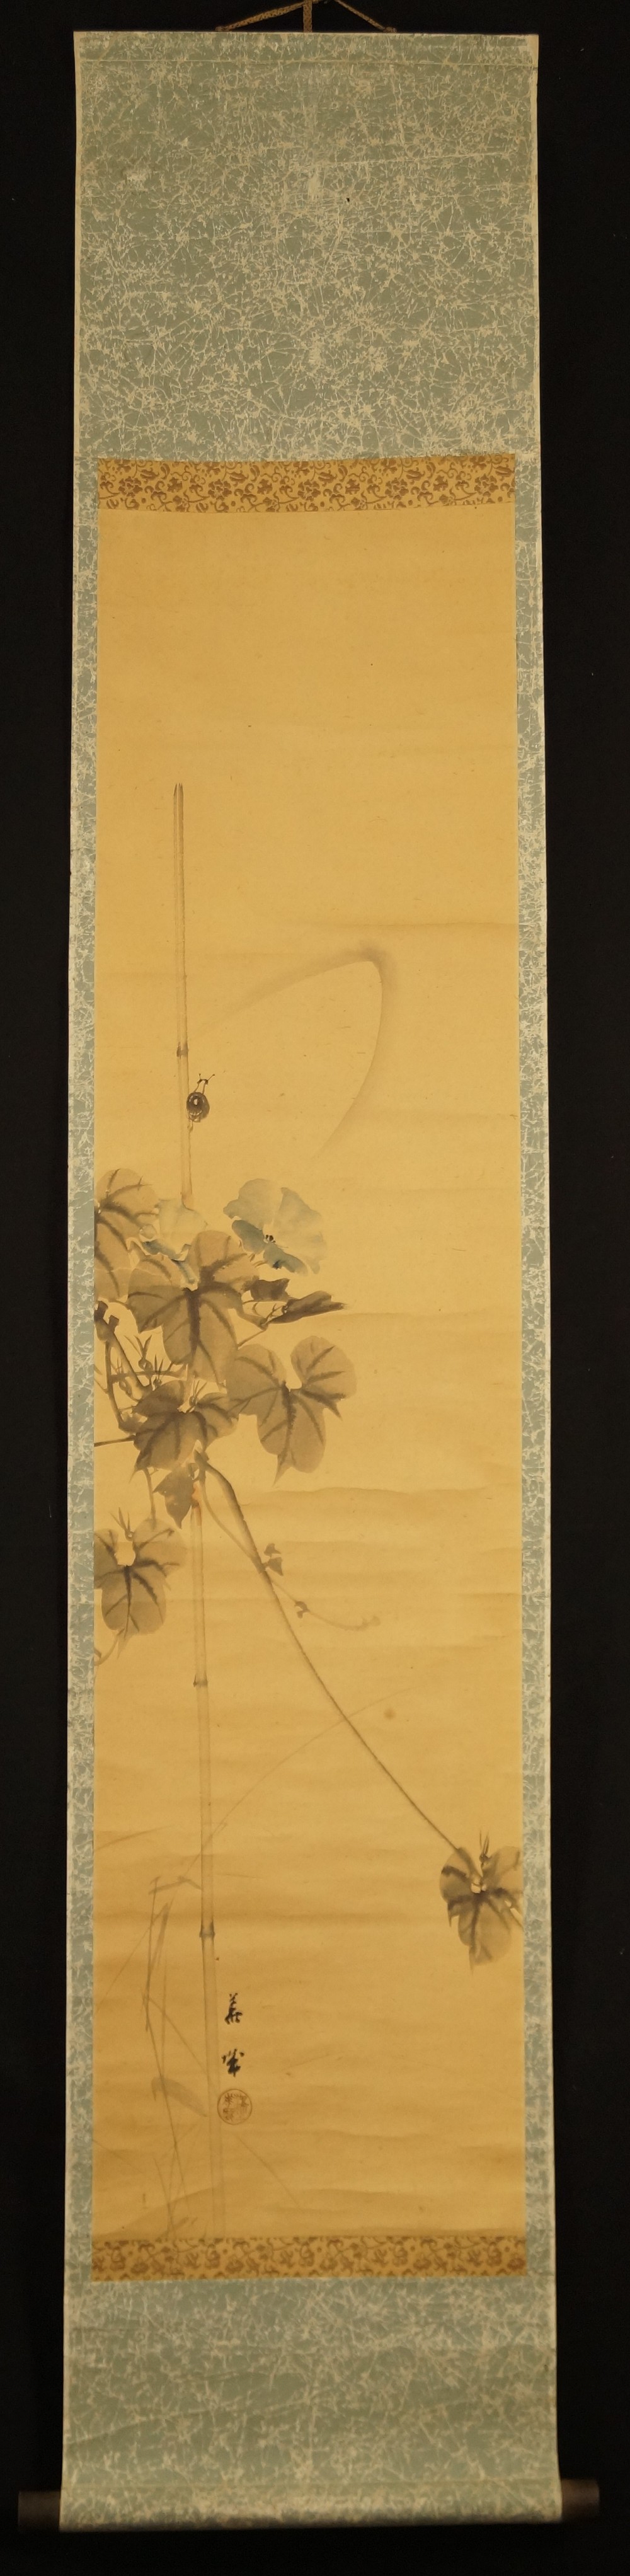 Die Schnecke auf der Lotusblume - japanisches Rollgemälde (Kakejiku, Kakemono)